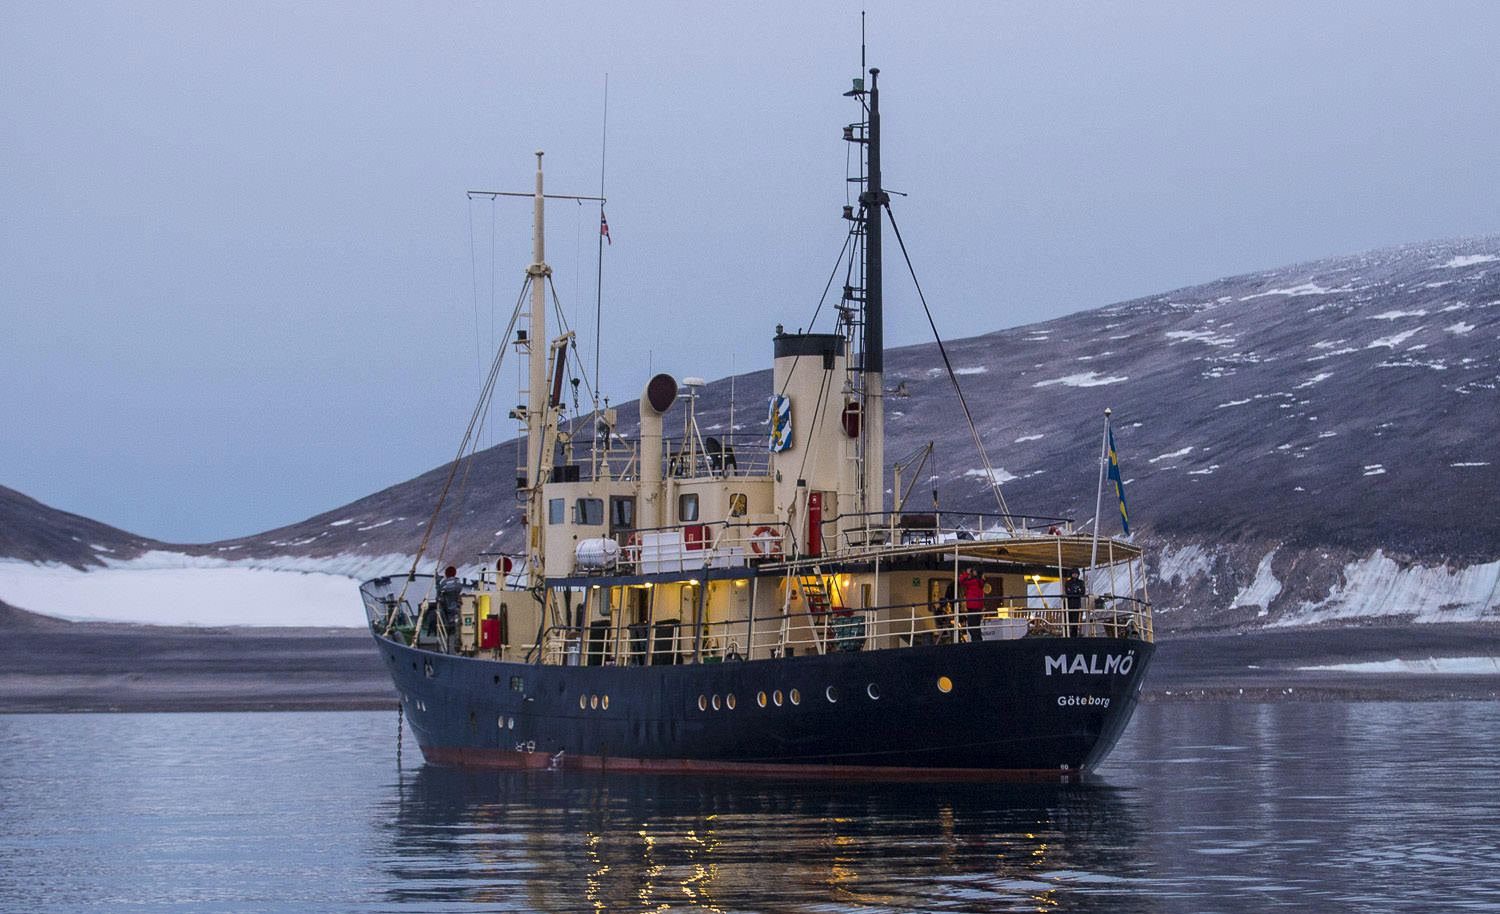 MS Malmö at sea in Svalbard